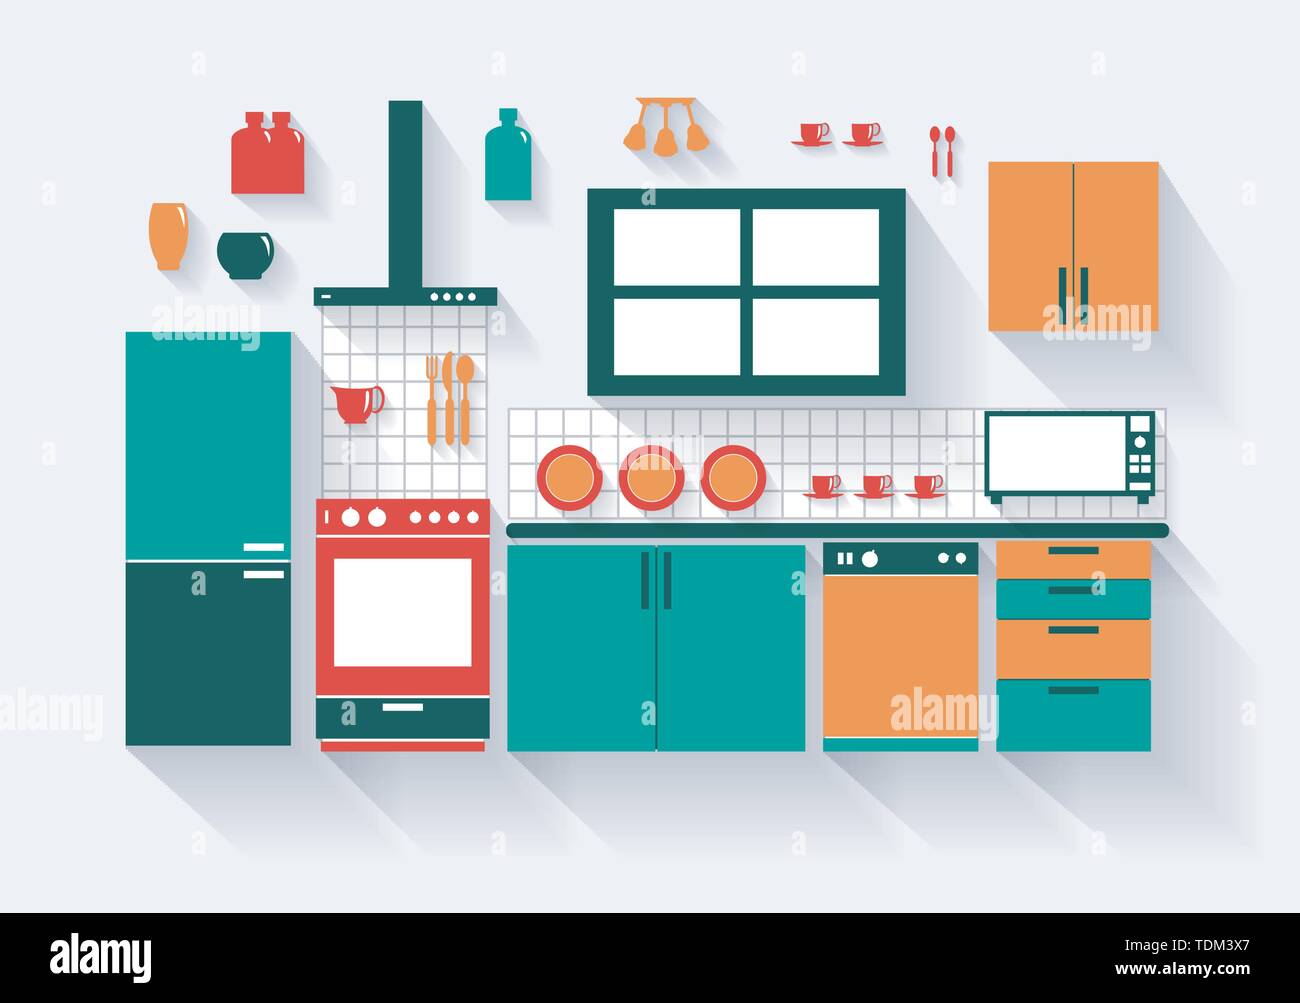 Cuisine avec cuisinière réfrigérateur lave-vaisselle et les raccords de longues ombres tous les articles regroupés séparément et facile à déplacer ou modifier Illustration de Vecteur